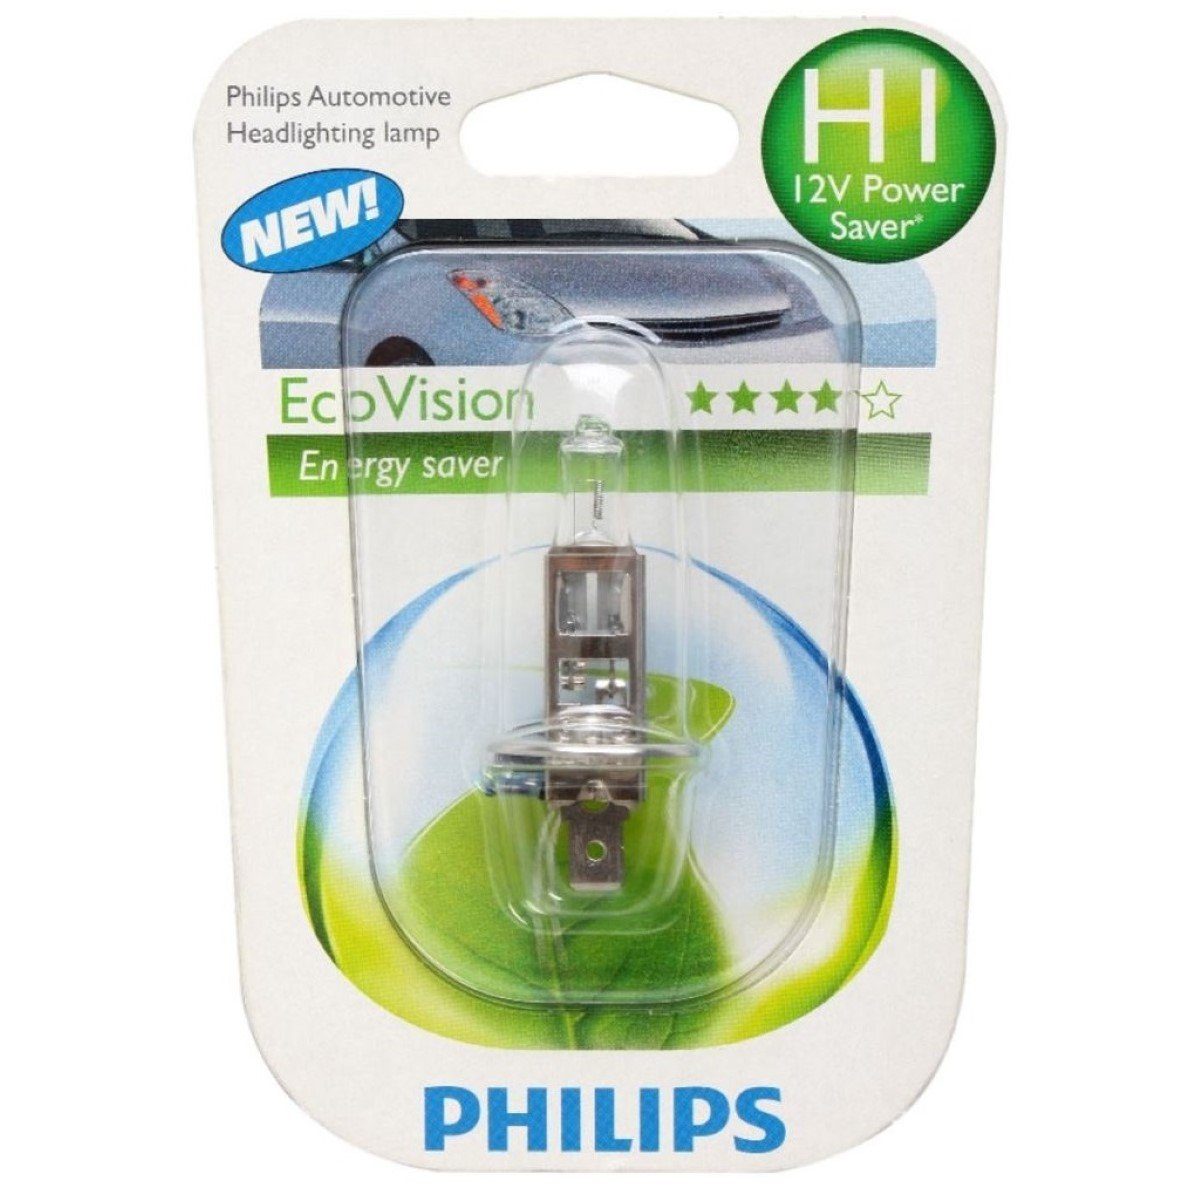 Philips LED Scheinwerfer »H1 Eco-Vision 12V 55W Energysaver Auto-Lampe«,  Hauptscheinwerfer, Halogen, Weiß, Halogen-Lampe mit mehr Licht, 12V  Halogen-Birnen Scheinwerfer-Lampe, Auto-Birne mit Sockel H1 P14,5s